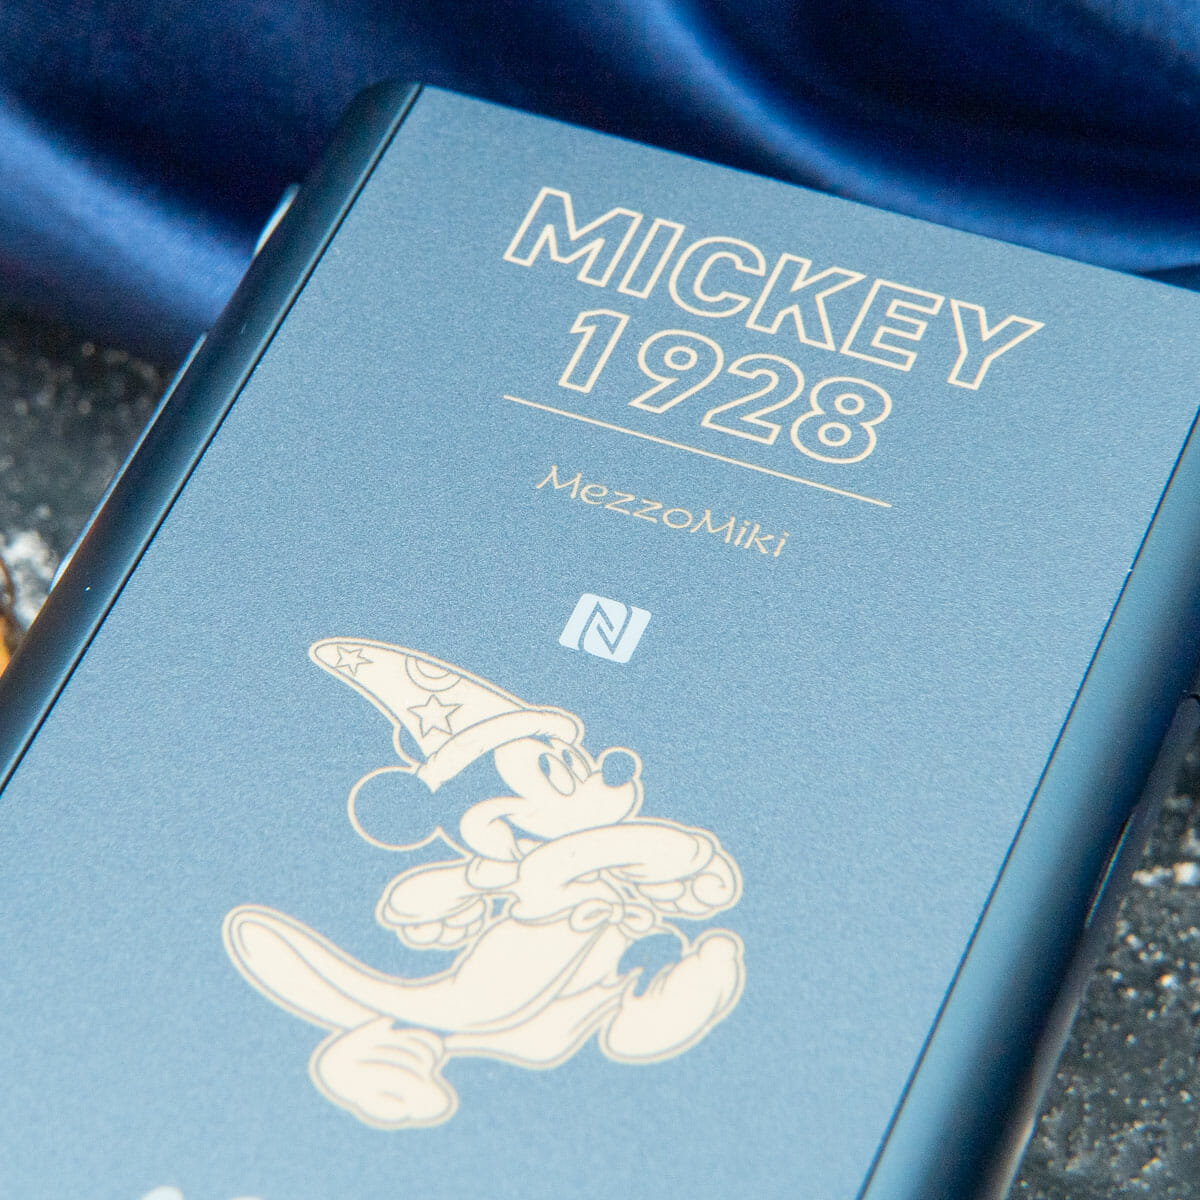 ソニーストア「ウォークマン NW-A50シリーズ Mickey The True Original Model」アップ